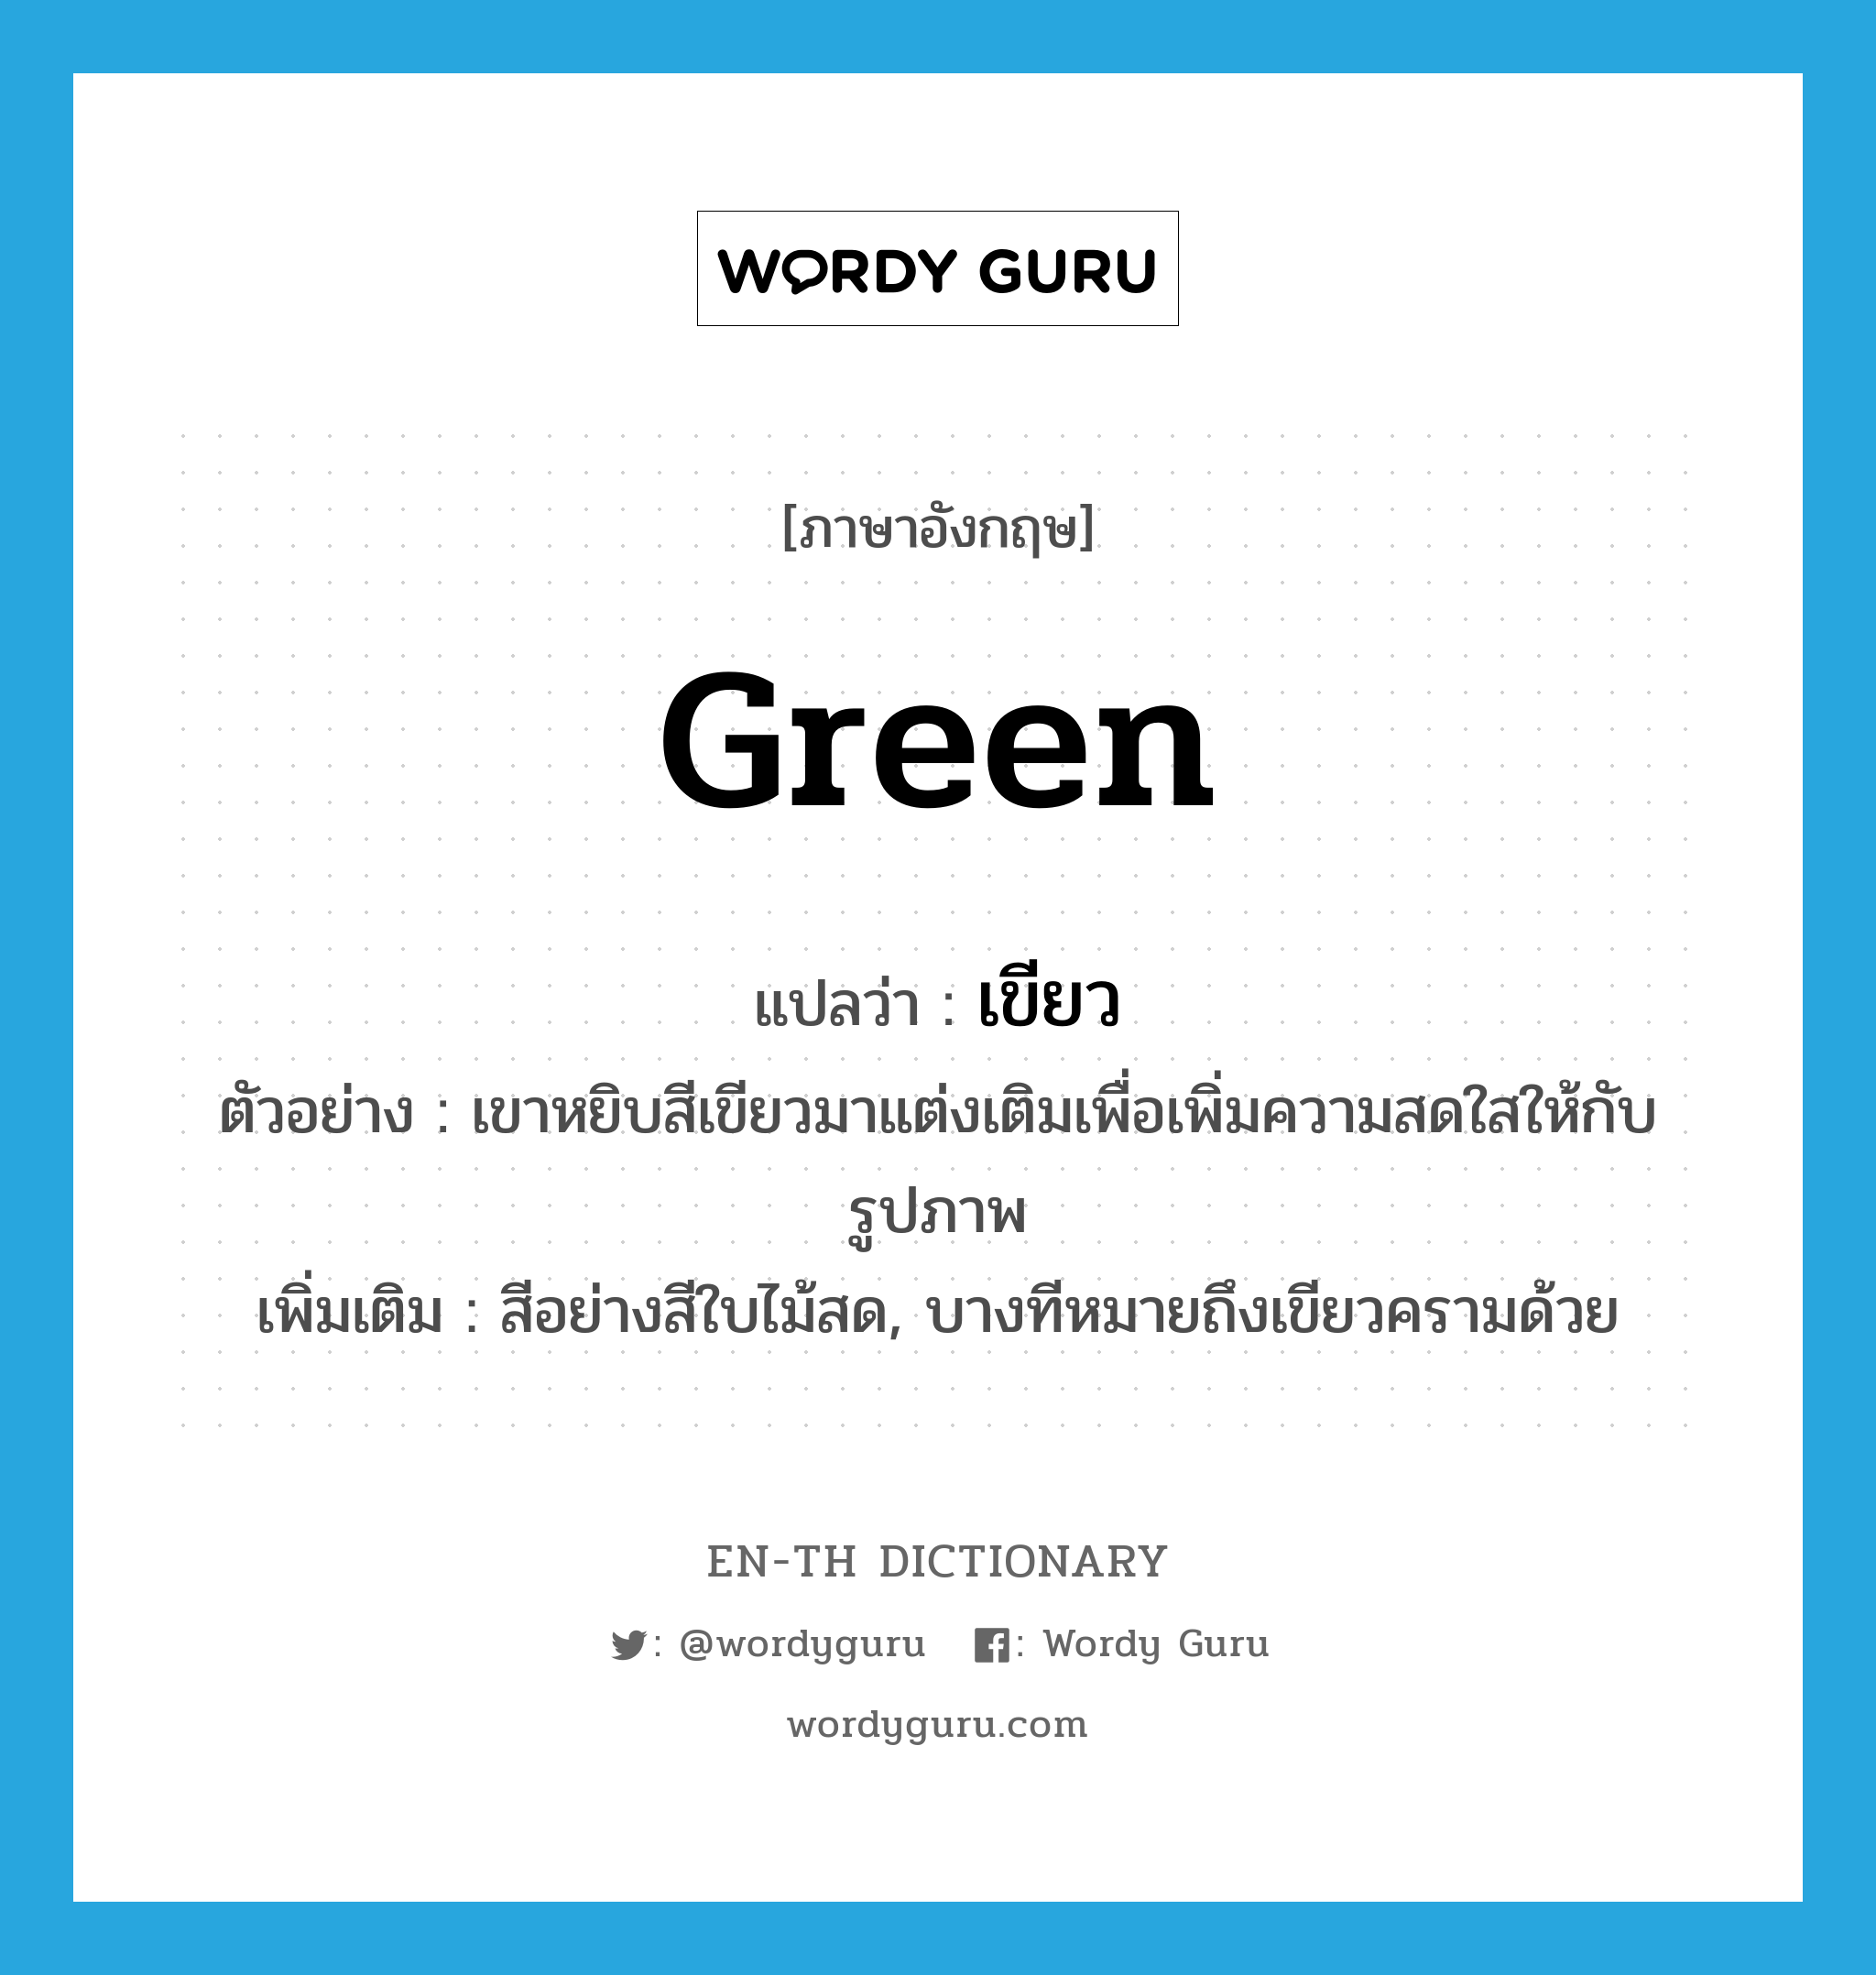 green แปลว่า?, คำศัพท์ภาษาอังกฤษ green แปลว่า เขียว ประเภท N ตัวอย่าง เขาหยิบสีเขียวมาแต่งเติมเพื่อเพิ่มความสดใสให้กับรูปภาพ เพิ่มเติม สีอย่างสีใบไม้สด, บางทีหมายถึงเขียวครามด้วย หมวด N